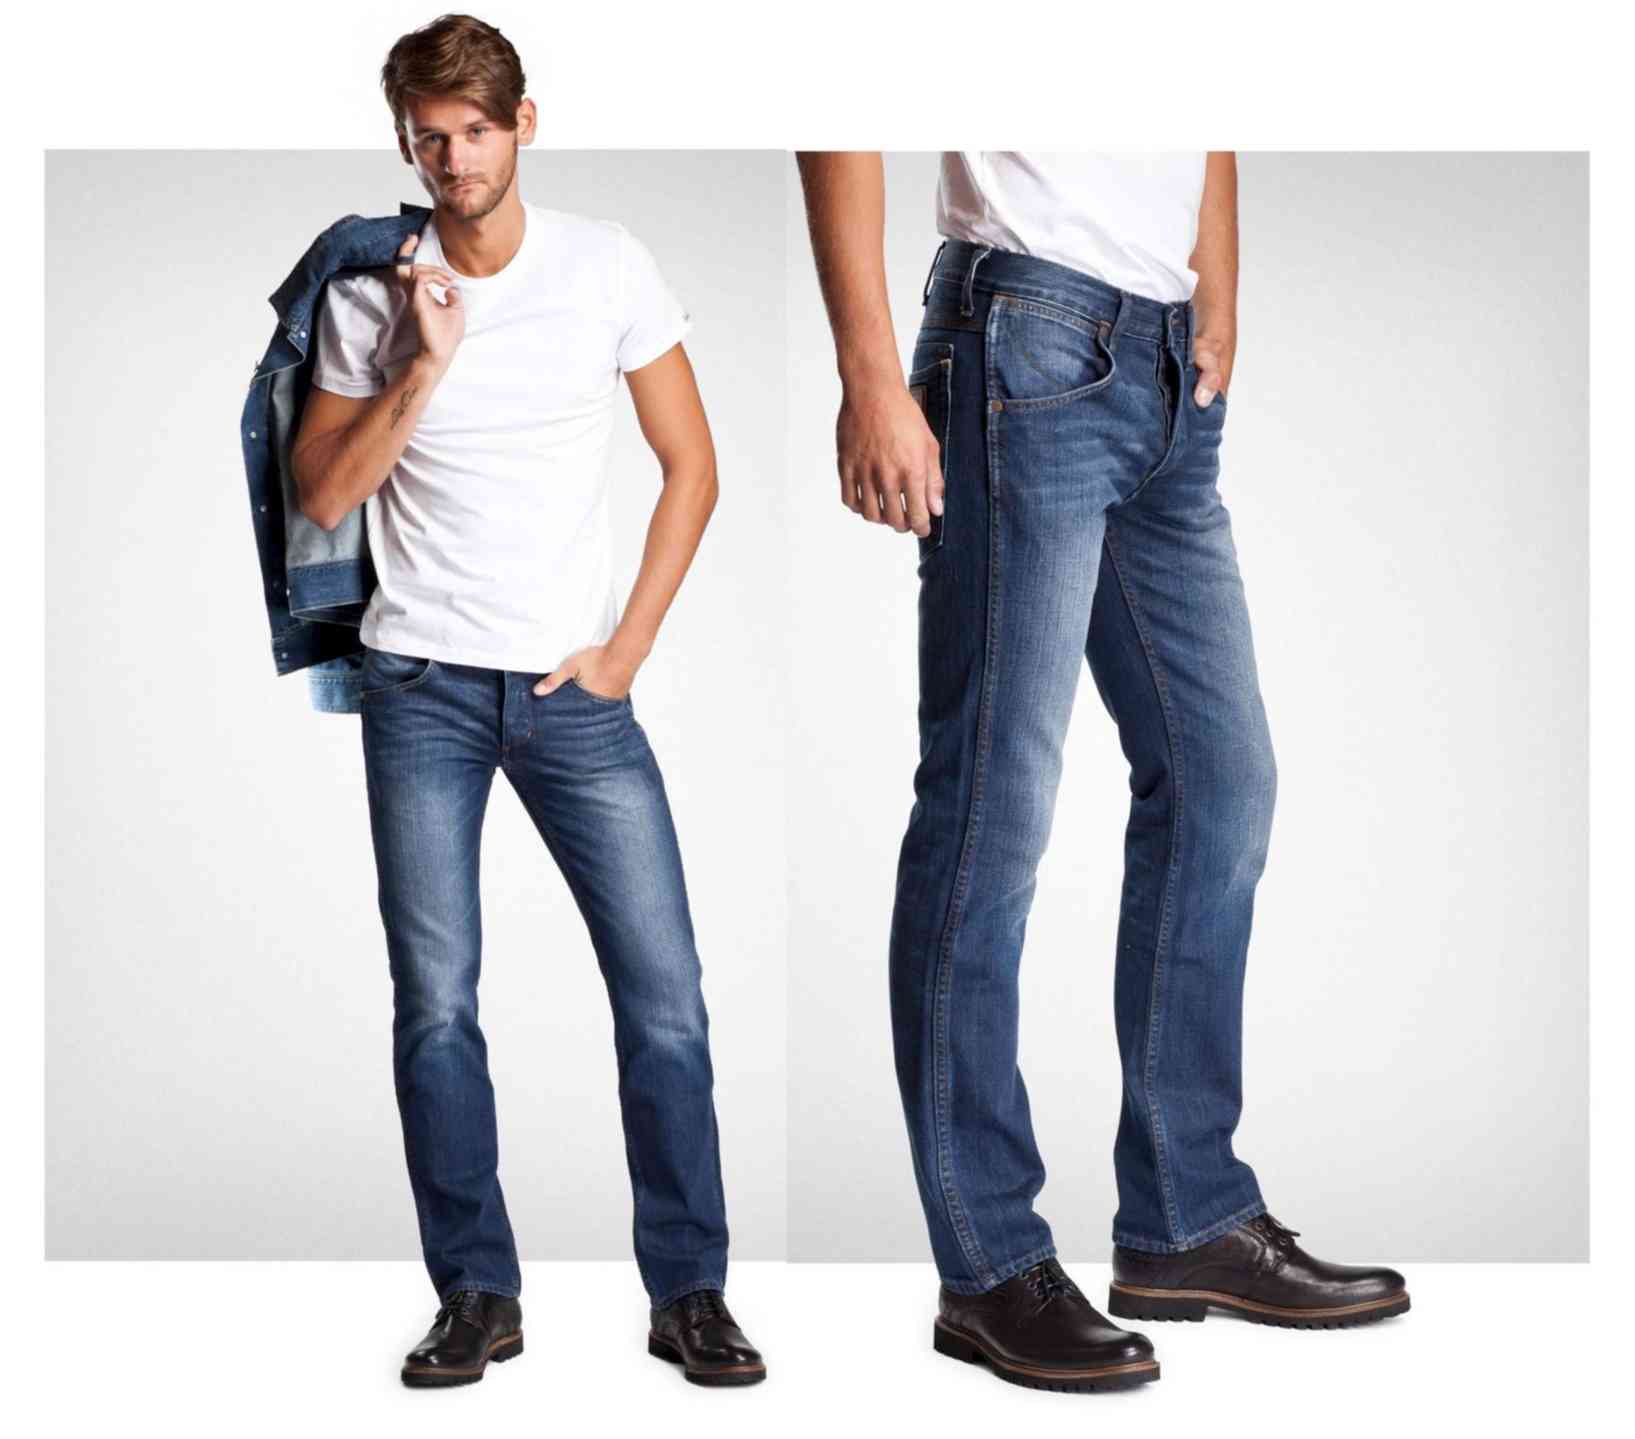 Недорогие мужские джинсы магазин. Джинсы Wrangler Crank. Мужчина в джинсах. Мужская одежда джинсы реклама. Мужские джинсы 2023.